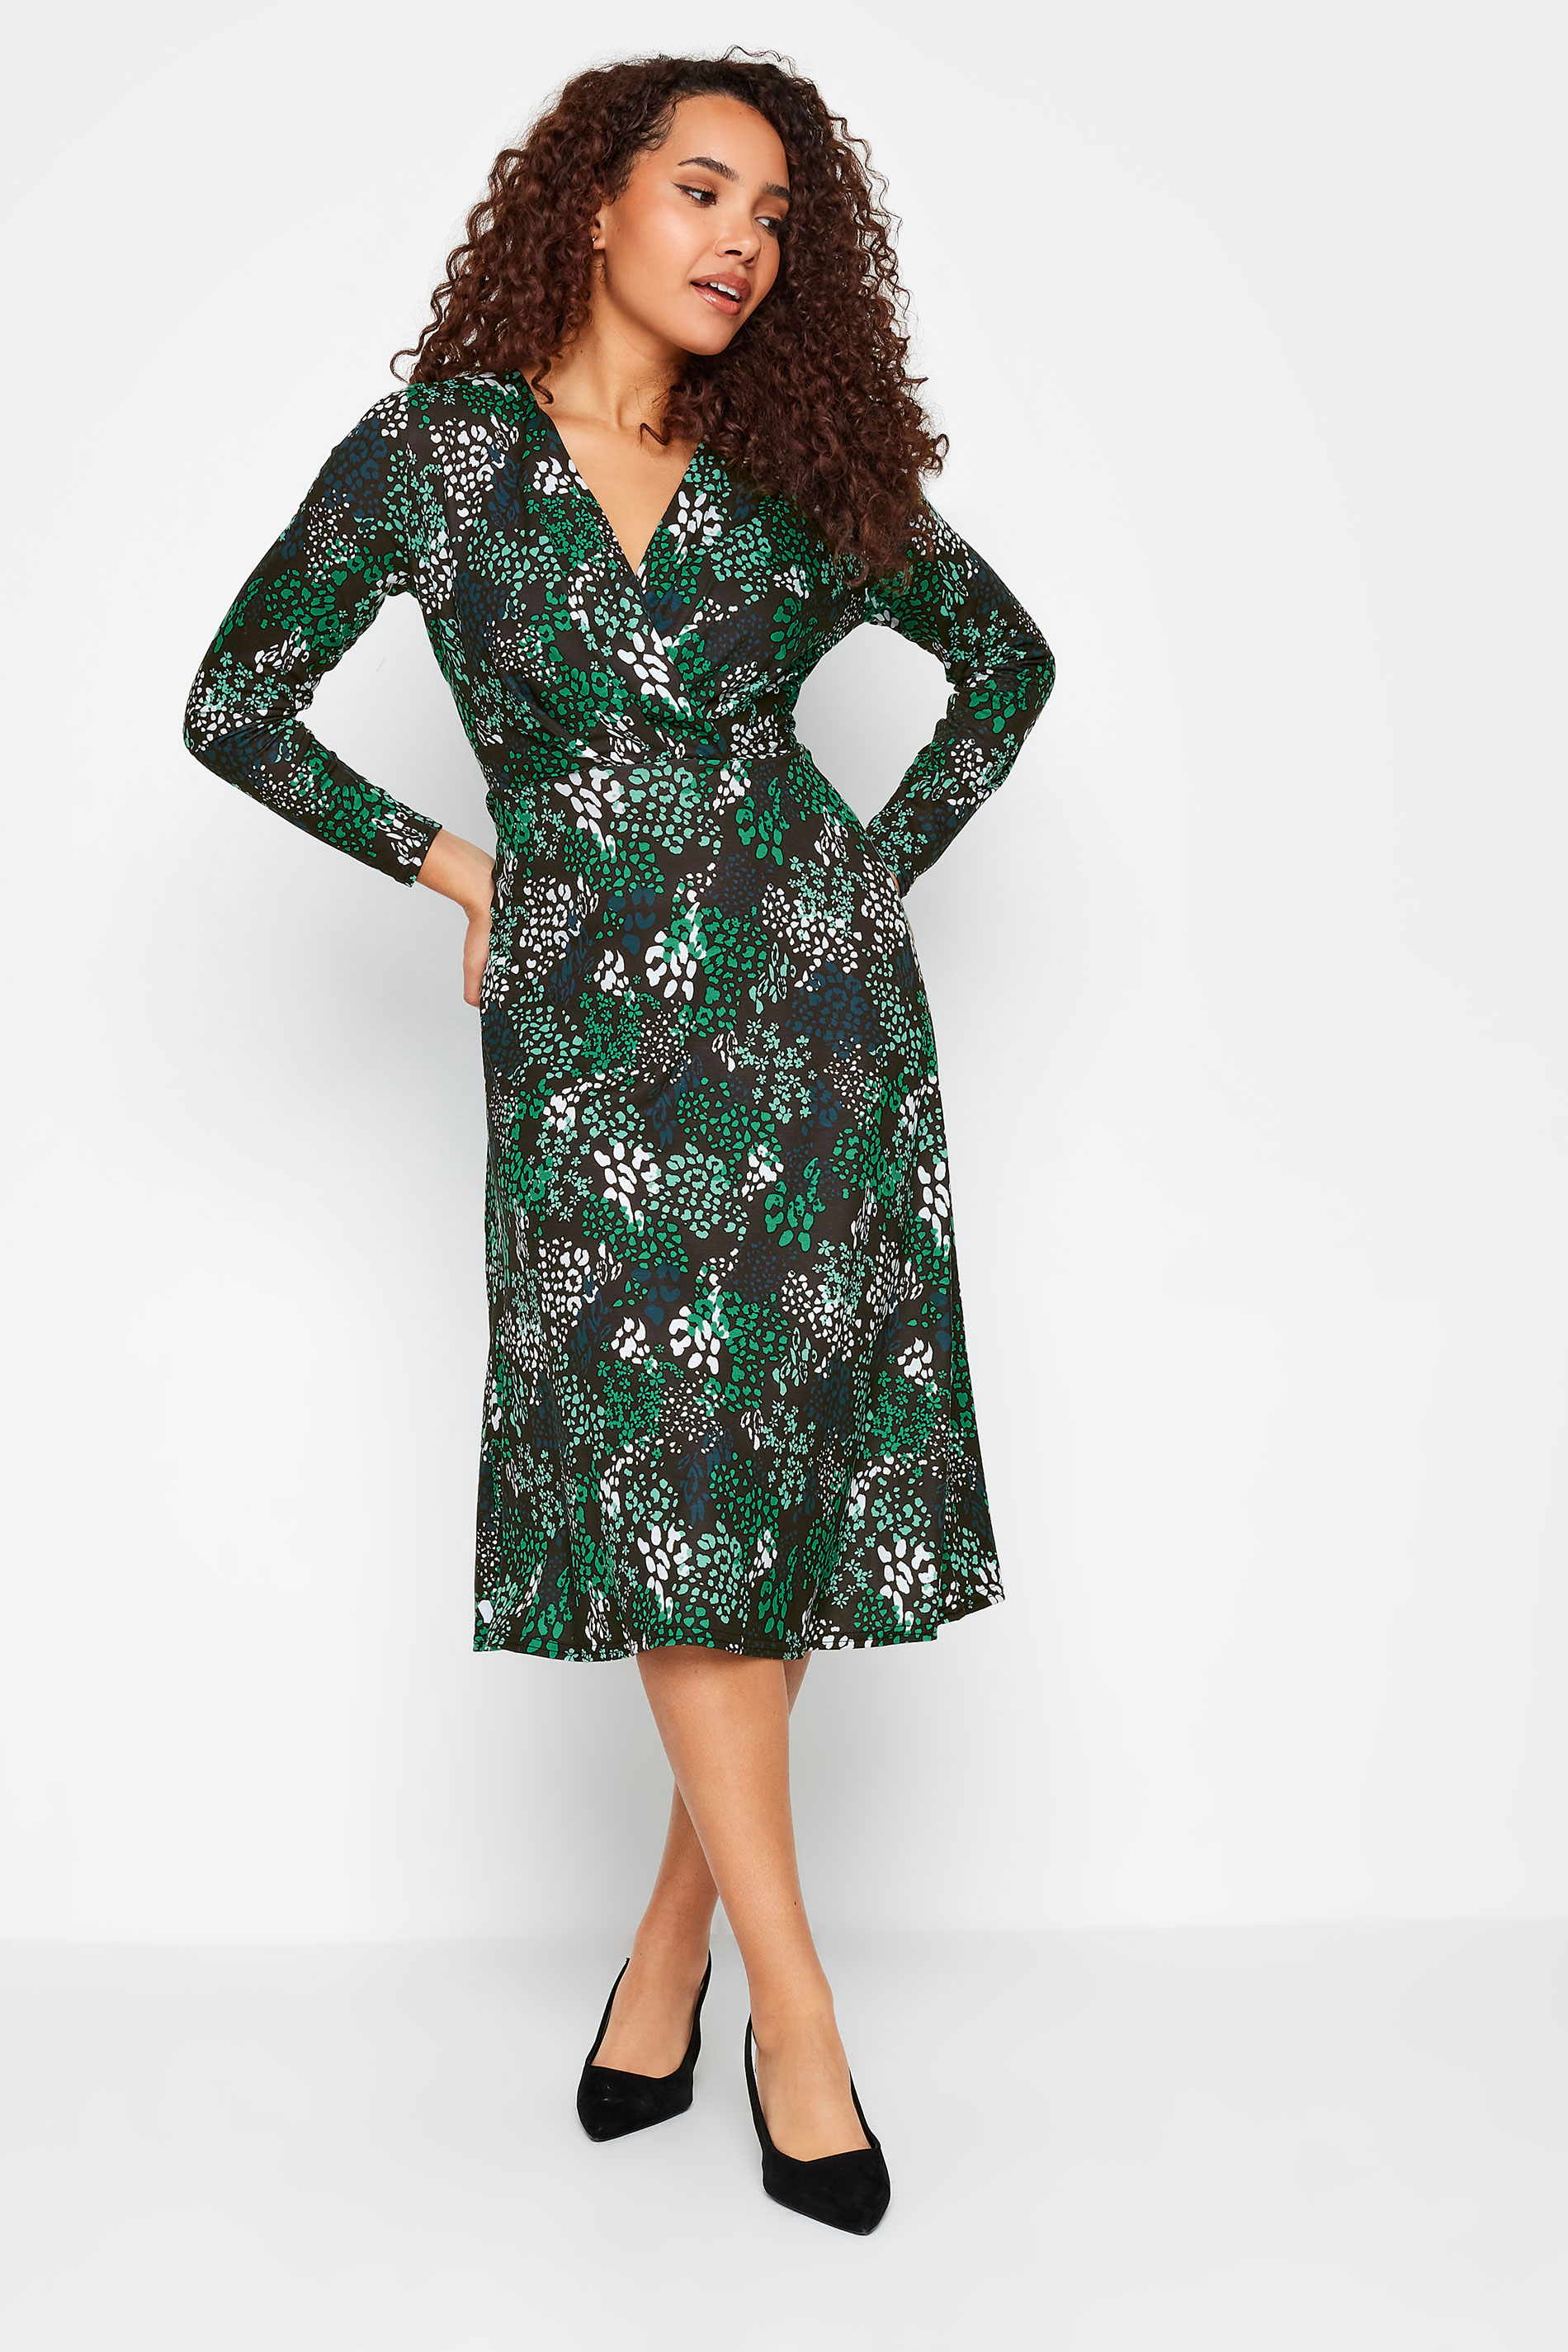 M&Co Black & Green Animal Print Wrap Dress | M&Co 1